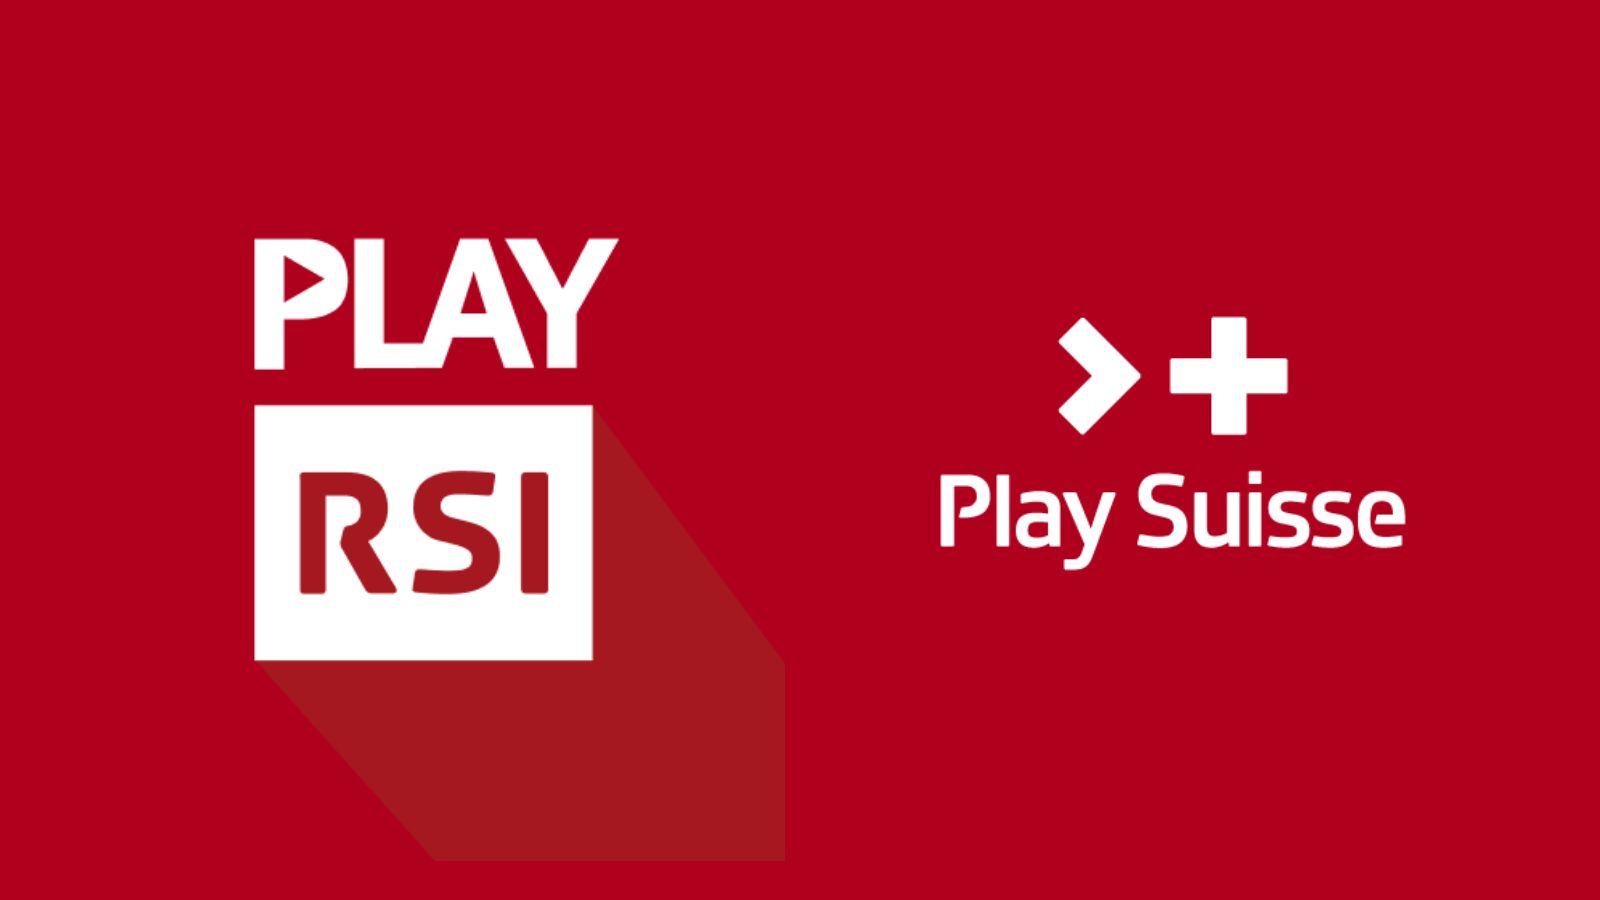 Qual è la differenza tra Play Suisse e Play RSI?